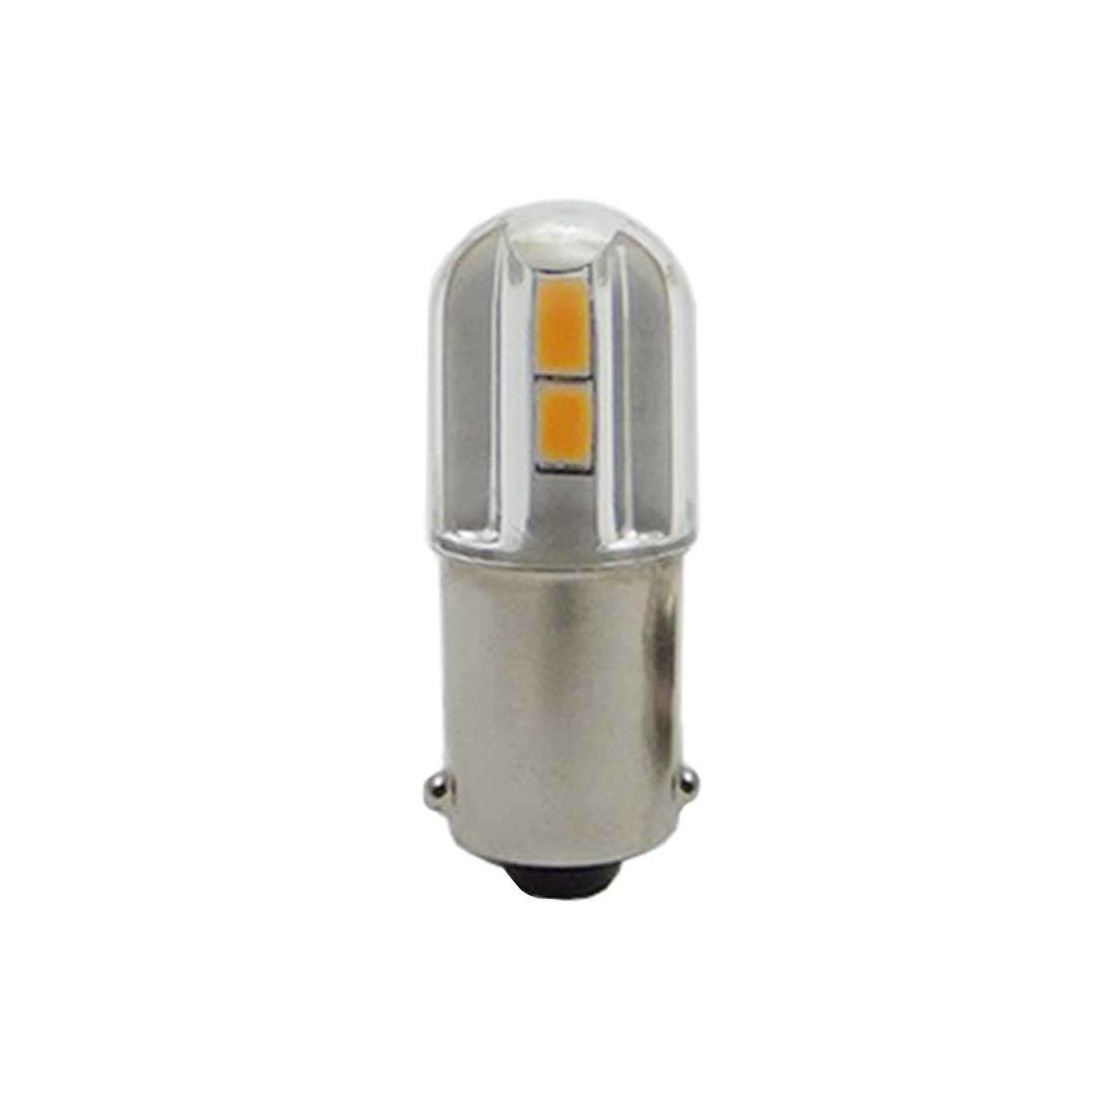 Les ampoules LED à culot B22 ✓ Starled